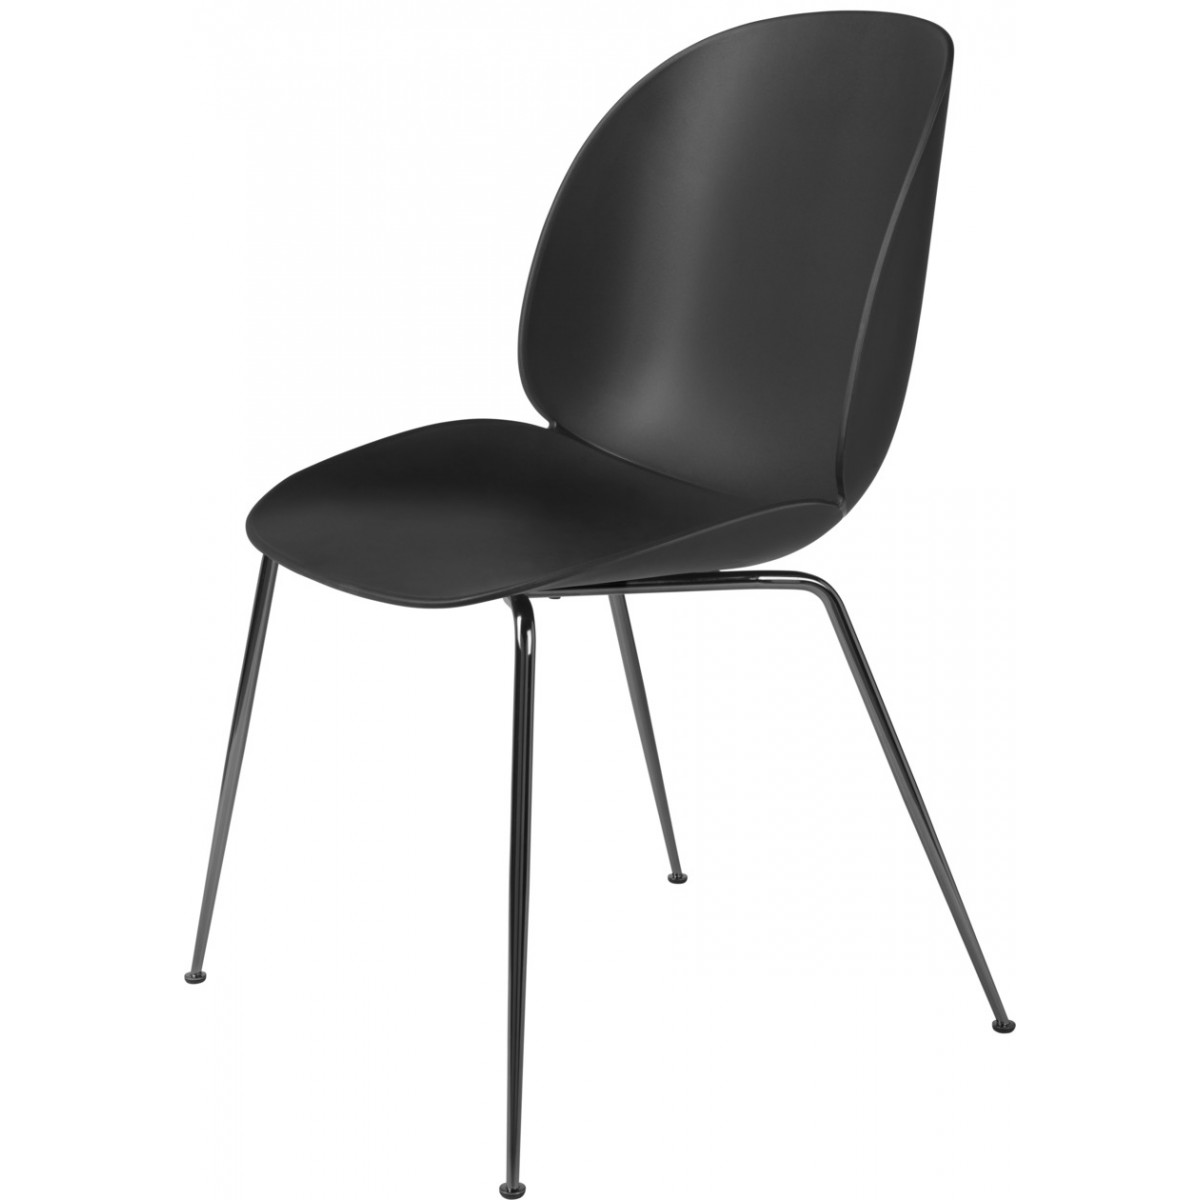 Coque noire - base noire chromée - chaise Beetle plastique